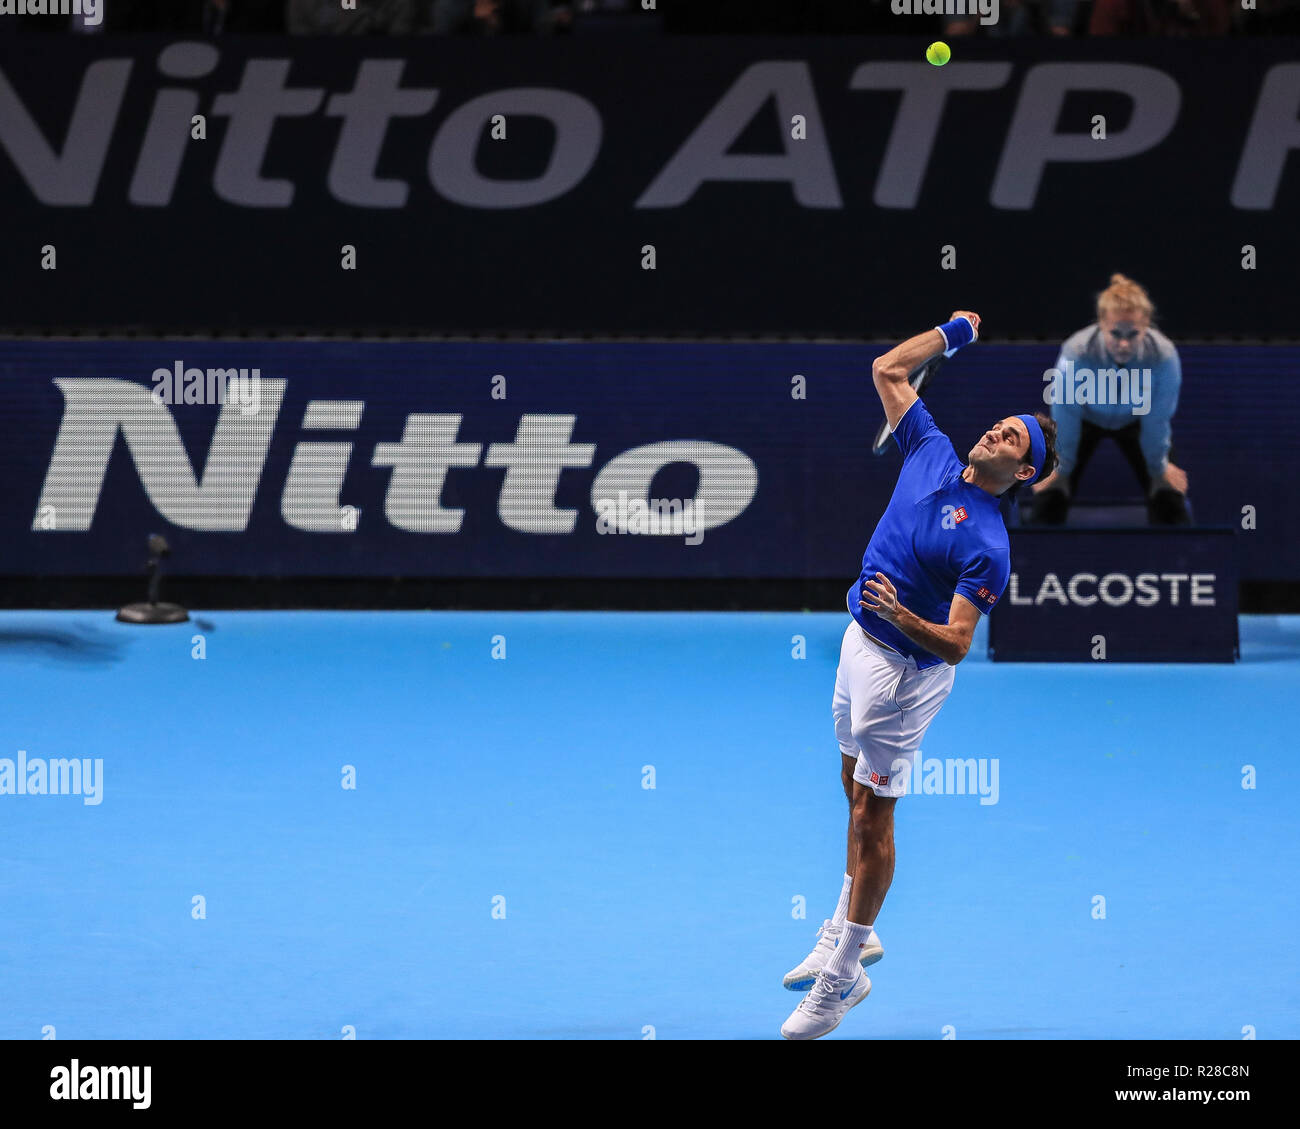 Londres, Royaume-Uni. 17 novembre, 2018. Nitto ATP World Tour finals ; la Suisse de Roger Federer en action lors de leur match contre Alexander Zverev Allemagne de Romena Fogliati Crédit : Crédit : Images Actualités/News Images /Alamy Live News Banque D'Images